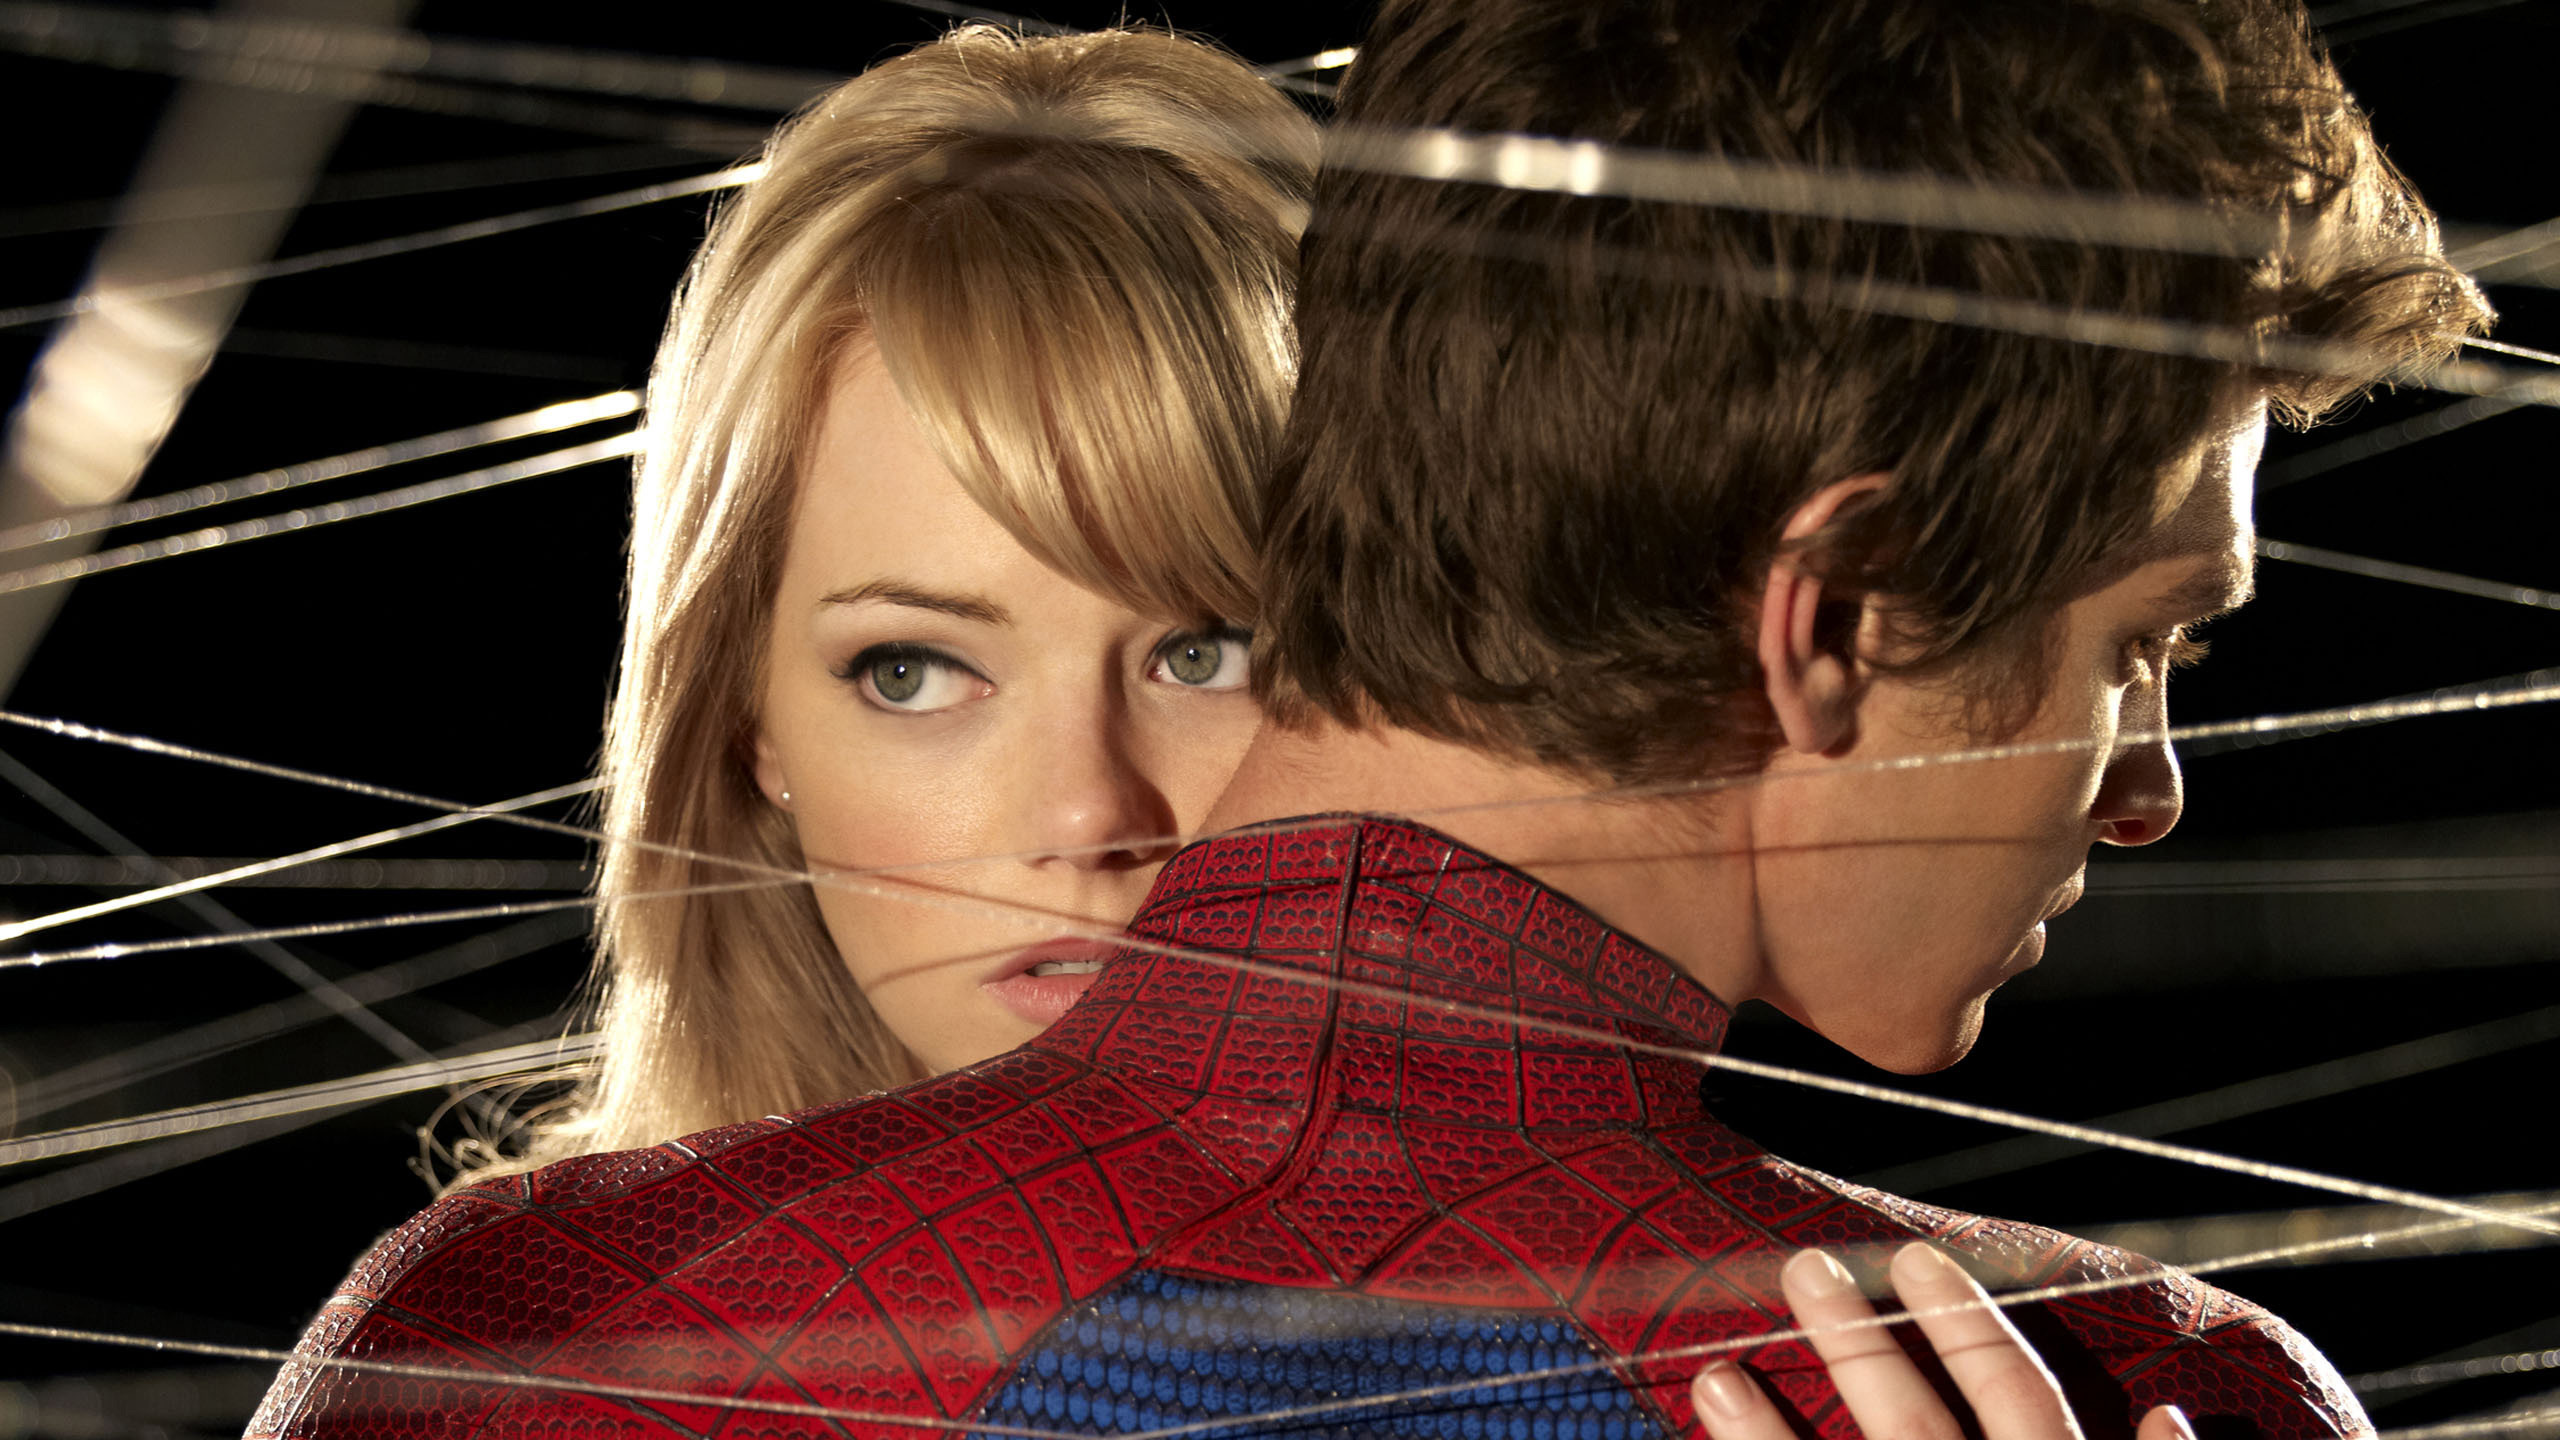 2560x1440 Spider-Man & Gwen Stacy wallpaper